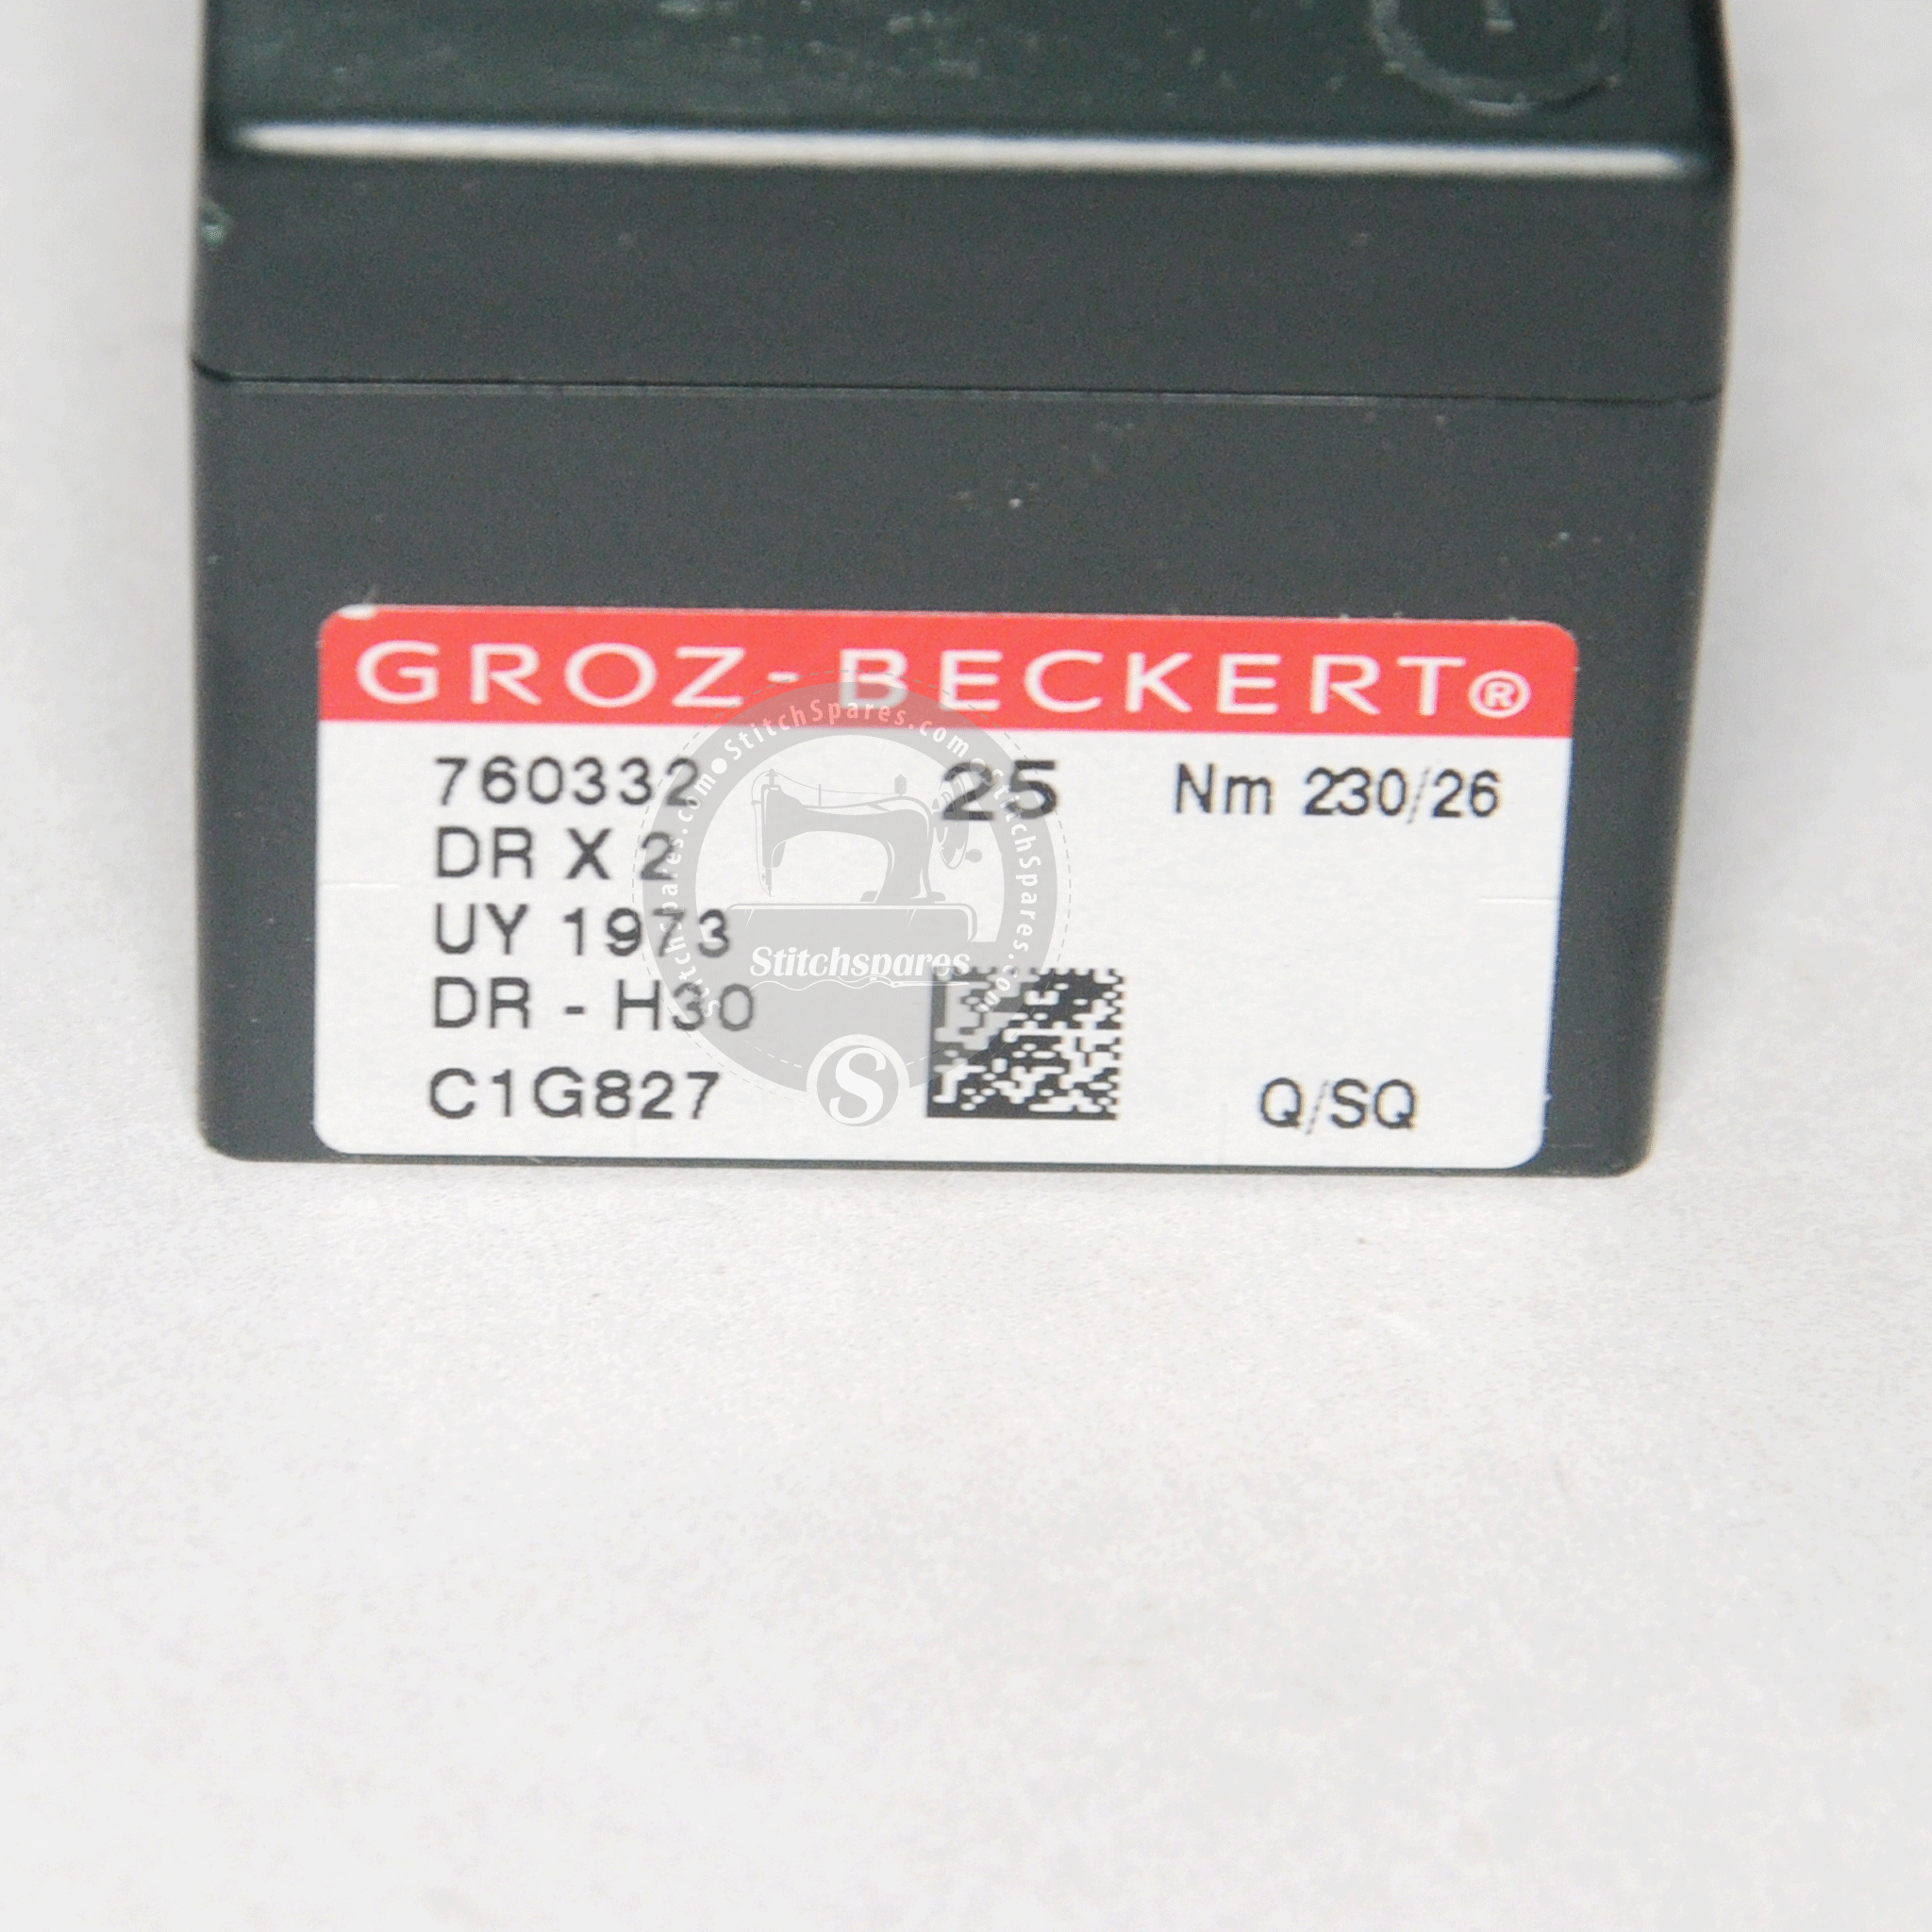 DRX2 124X2 UY 1973 23026 Groz Beckert Nähmaschinennadel